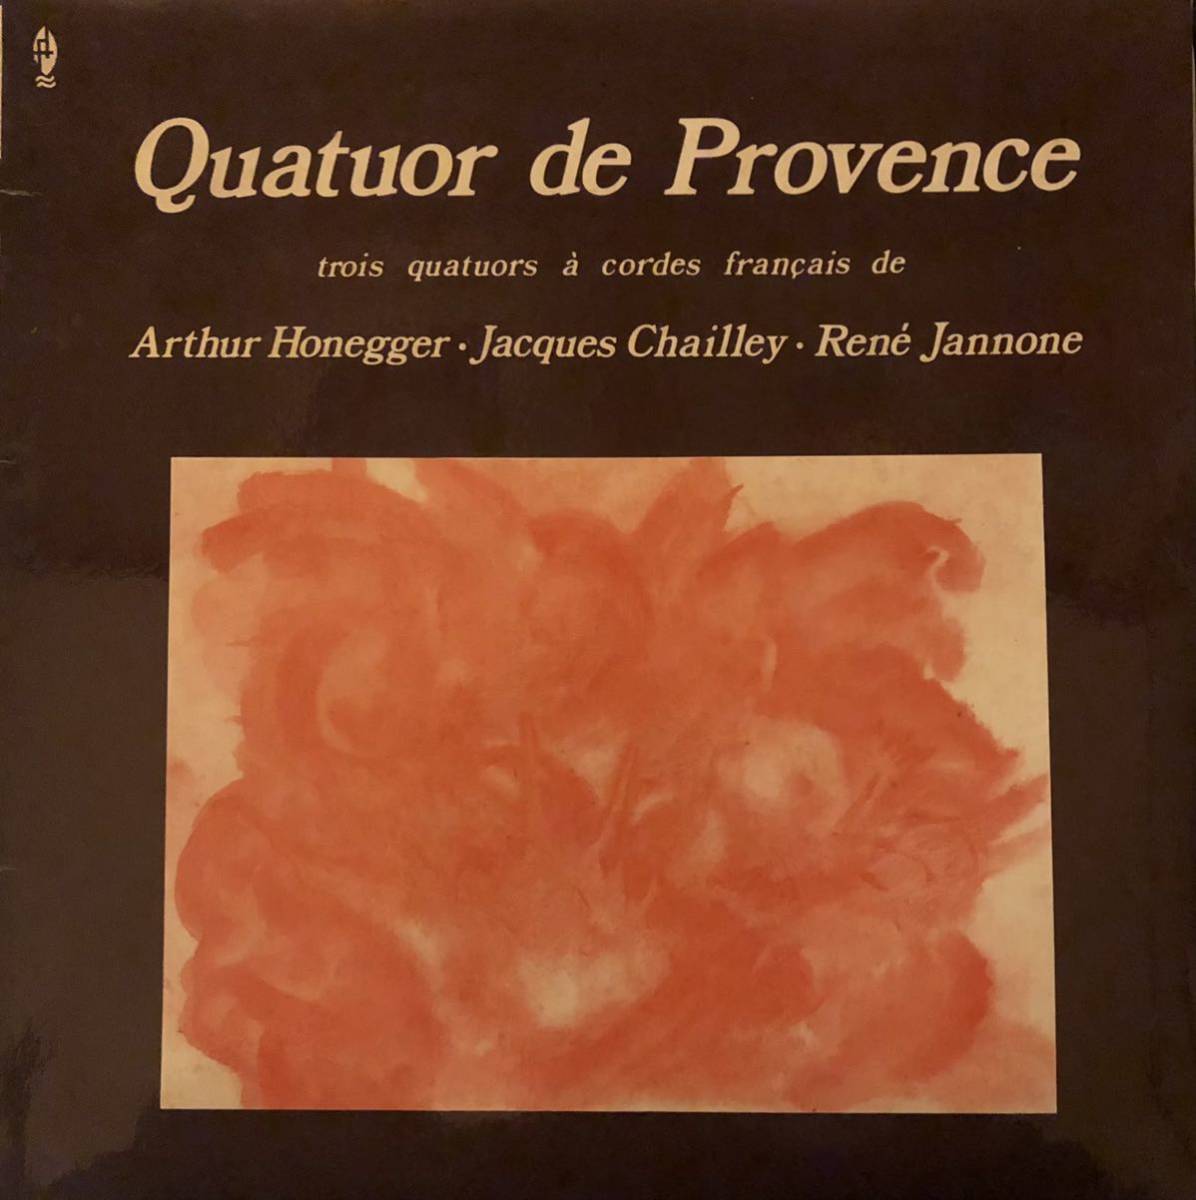 Quatuor de Provence trois quatuor a cordes Francais de Arthur Honegger - Jacques Chailley - Rene Jannone / M 10 031 / フランス盤_画像1